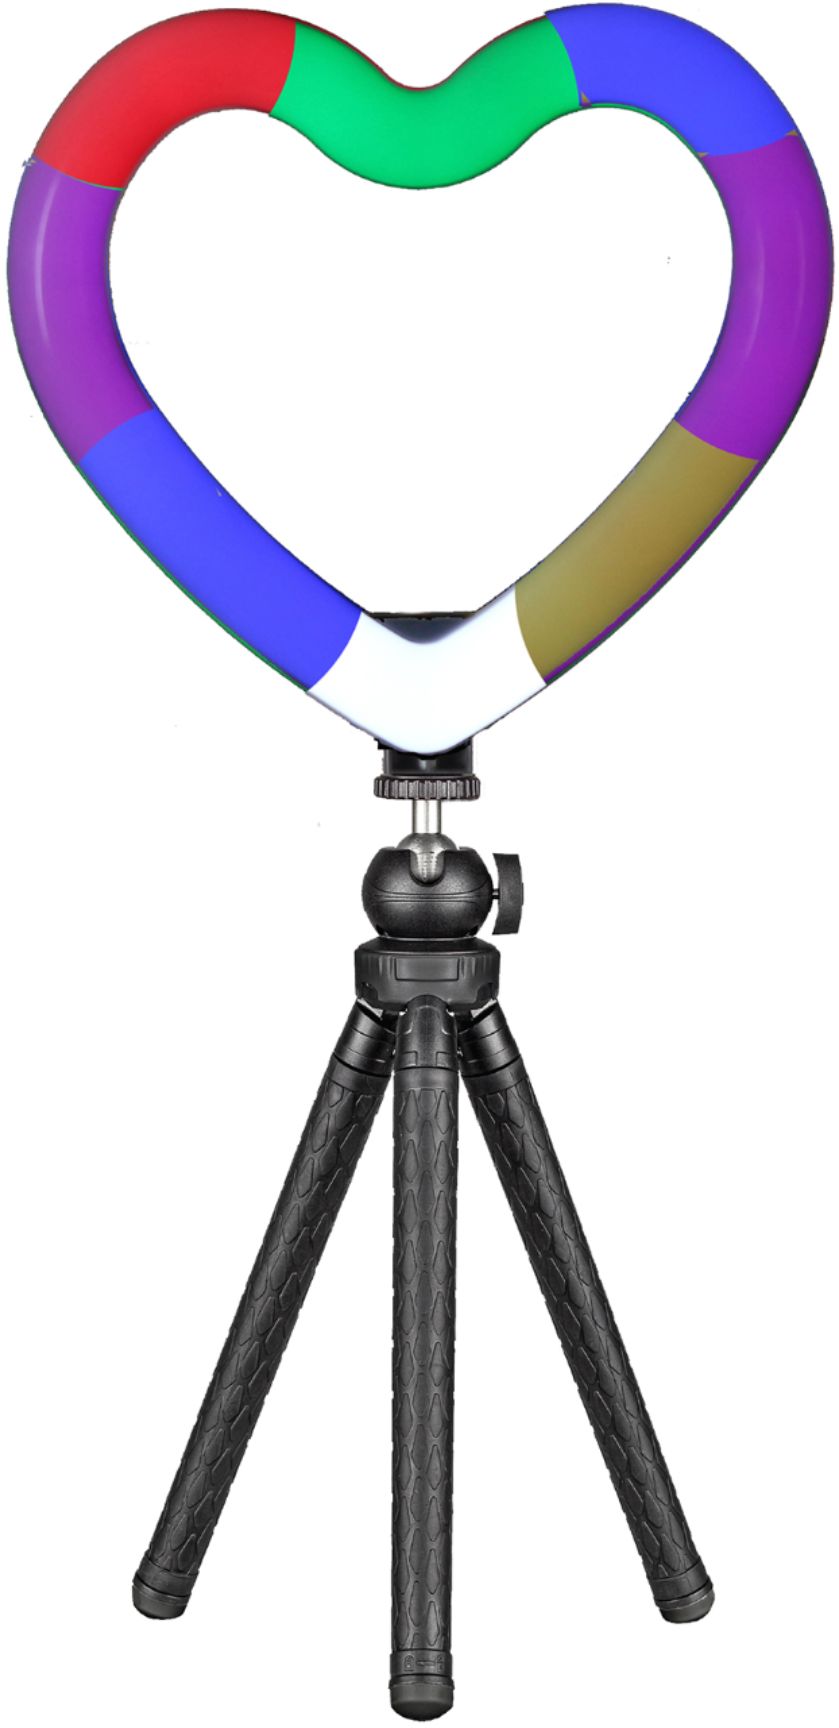 Sunpak 25 Bi-Color Ring Light Vlogging Kit with Bluetooth Remote  VL-LED608-25RLK - Best Buy